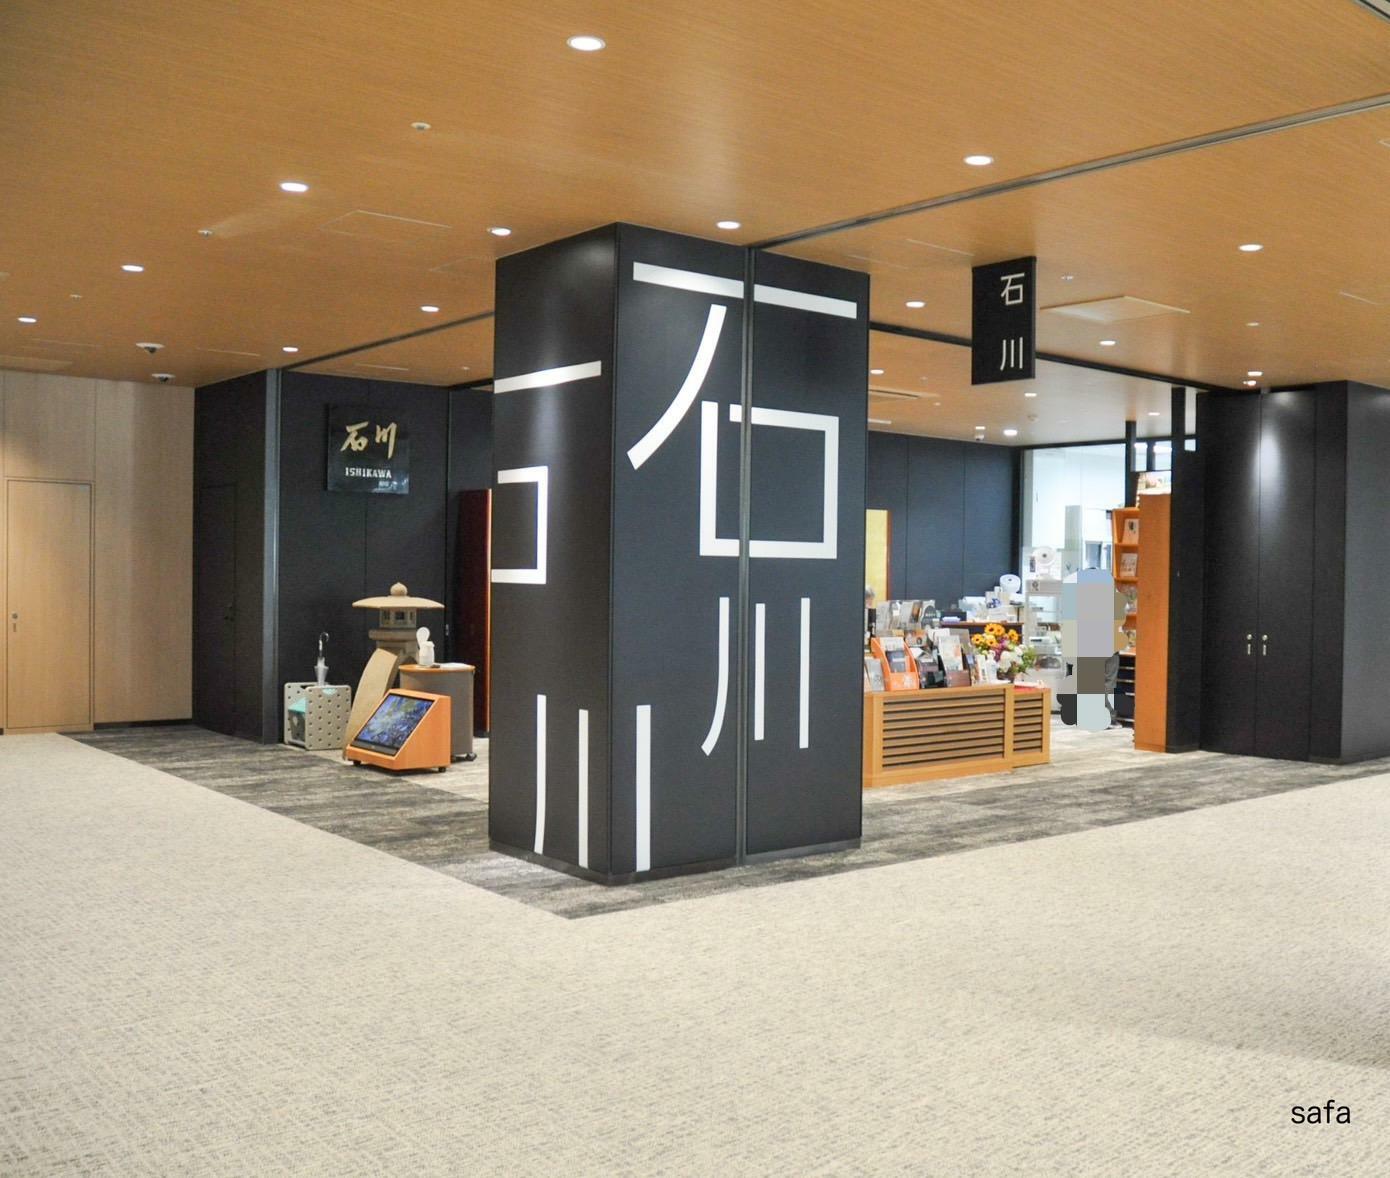 石川県名古屋観光物産案内所。兼六園のシンボル「ことじ灯籠」が出迎えます。